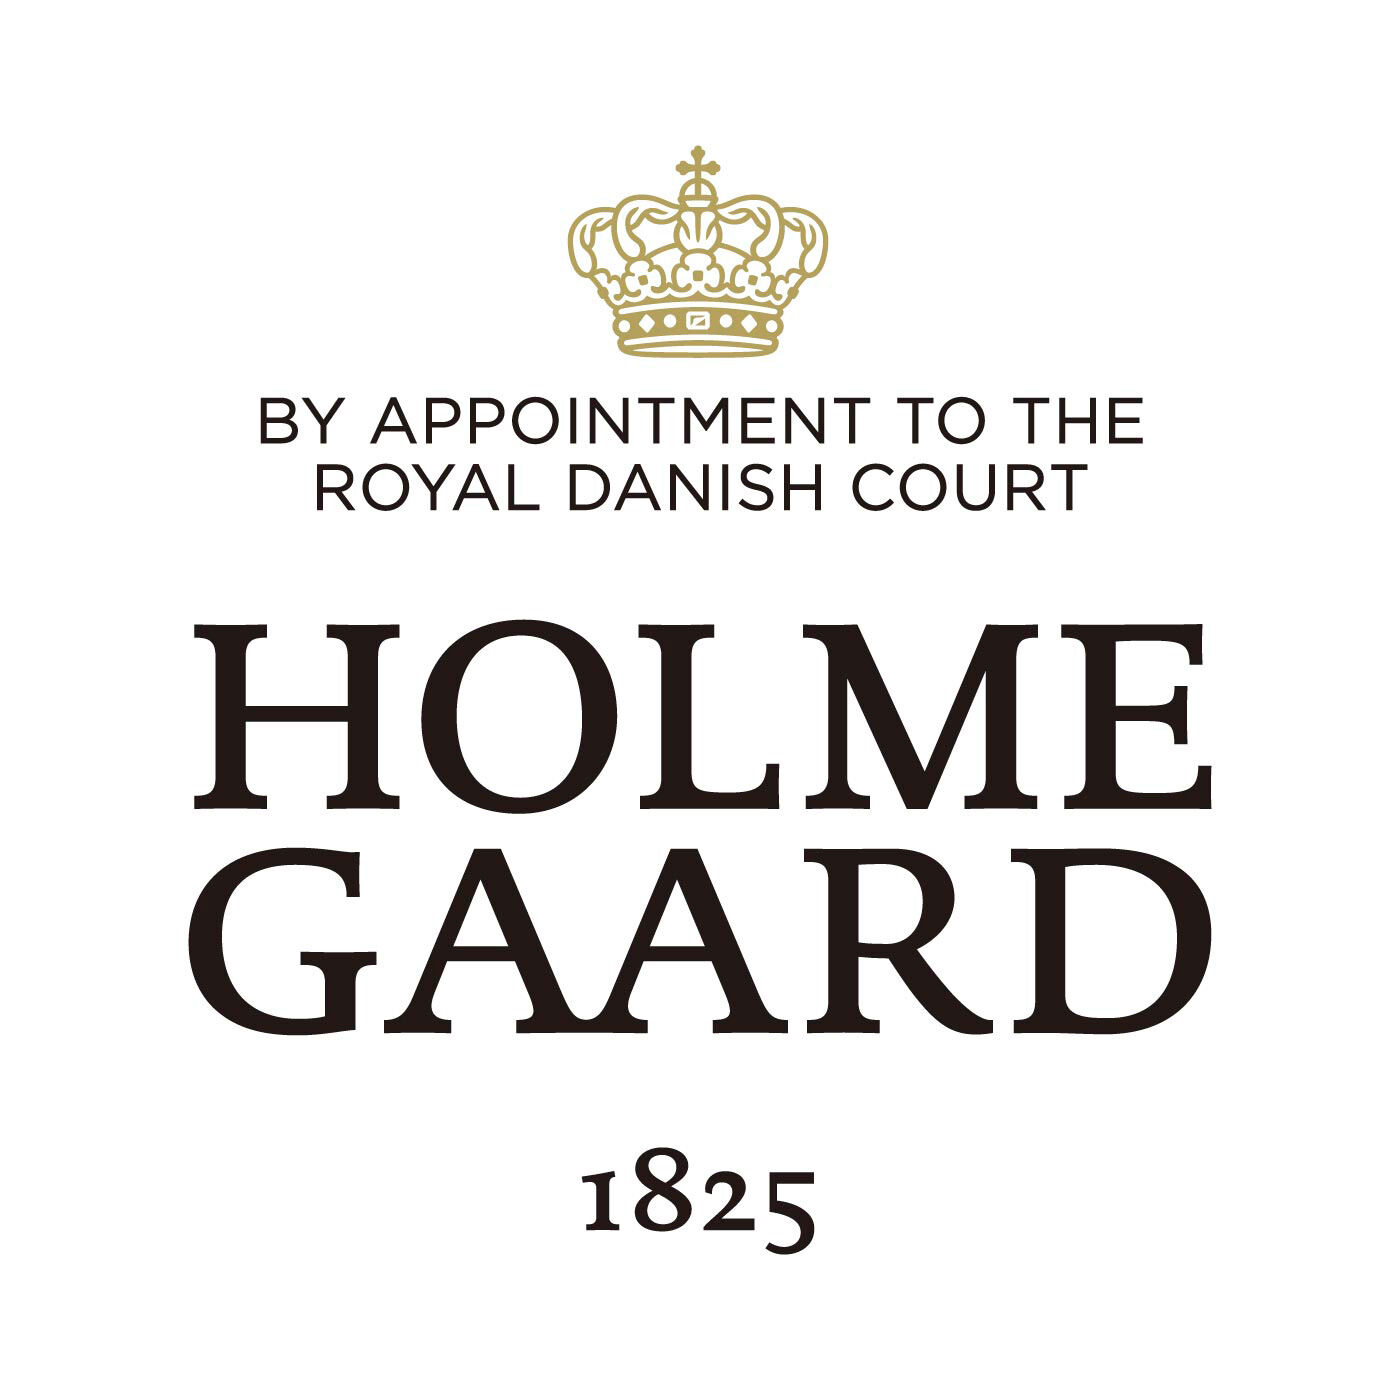 SeeMONO|ガラスのウェーブが美しい　一年中飾れるクリスマスツリー〈Ｓ〉／ホルムガード|HOLMEGAARD（ホルムガード）は、1825年にデンマークに生まれた伝統あるガラスブランドです。1900年代、多くの芸術家が手掛け始めるホルムガードの商品は、そのクオリティの高さからデンマーク王室 御用達ブランドに選ばれました。熟練の職人たちによる吹きガラス製法で生み出されるユニークなデ ザインのガラス製品は世界中の美術館に所蔵されています。